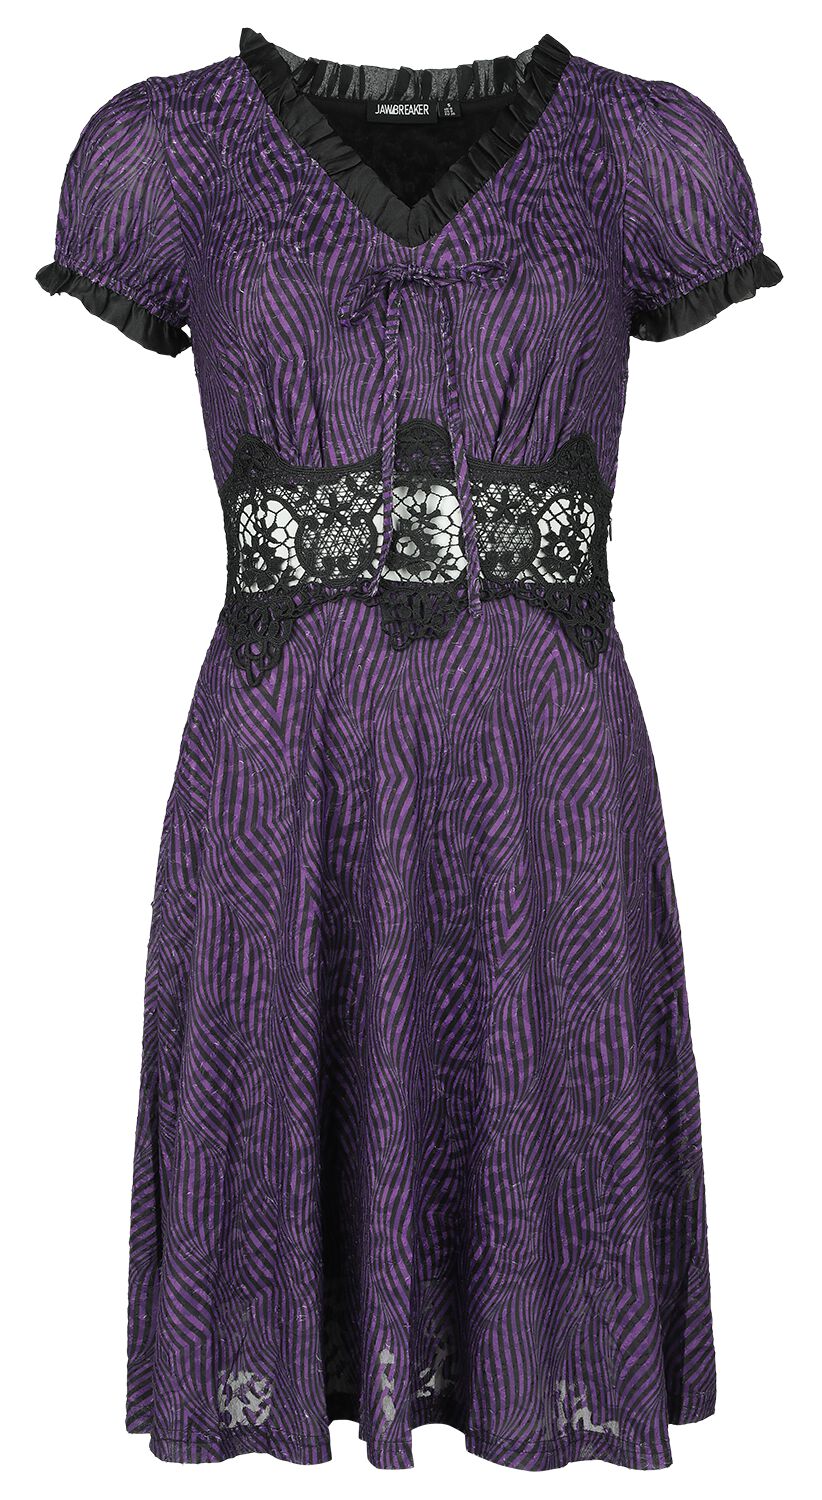 Jawbreaker Purple Zebra Dress Kurzes Kleid lila schwarz in XS von Jawbreaker